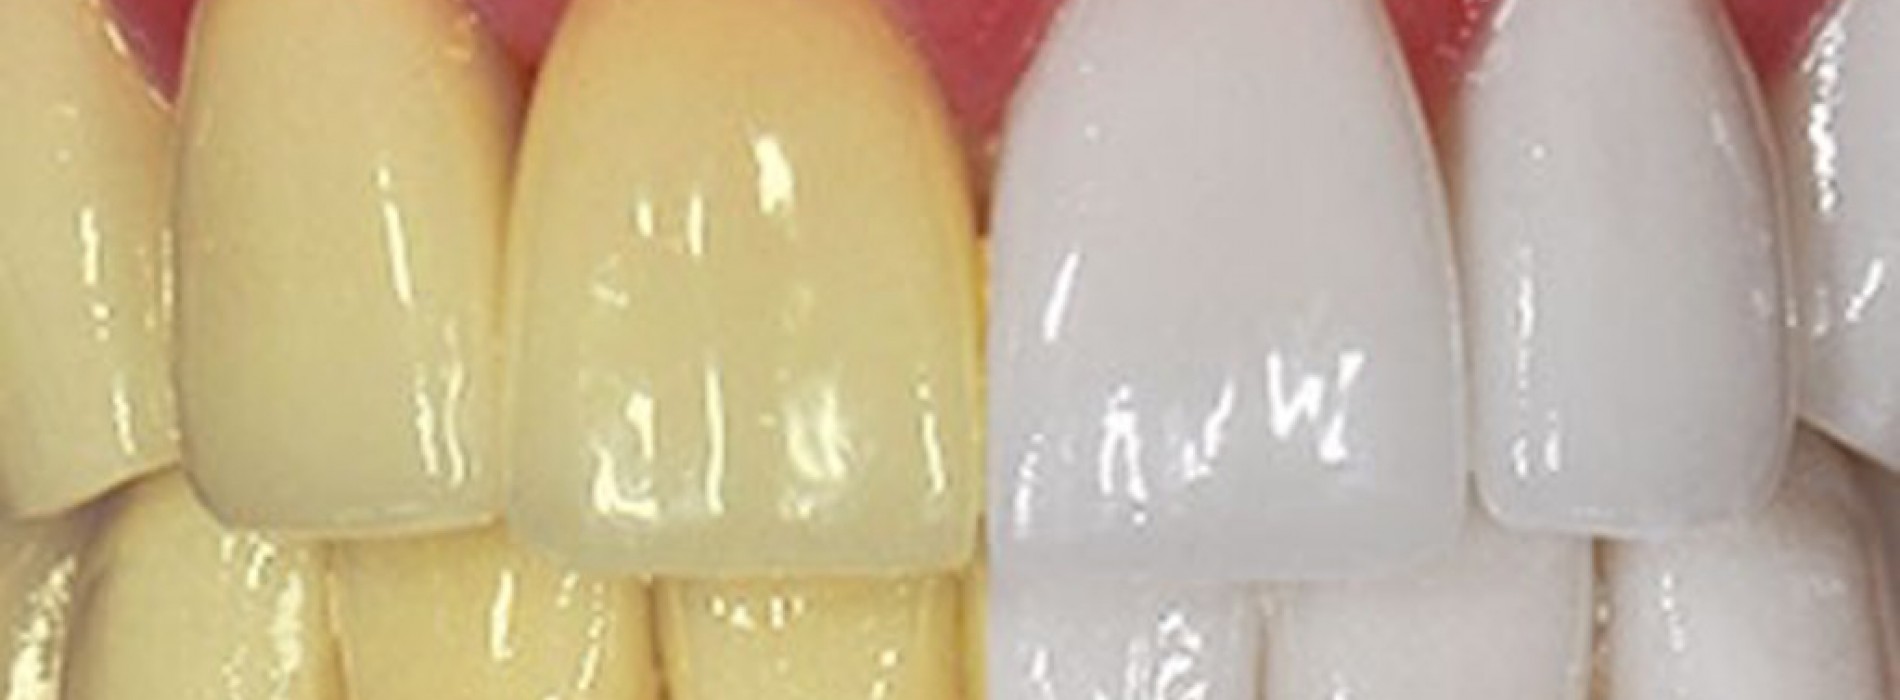 9 Tips om je tanden op een natuurlijk manier witter te maken.